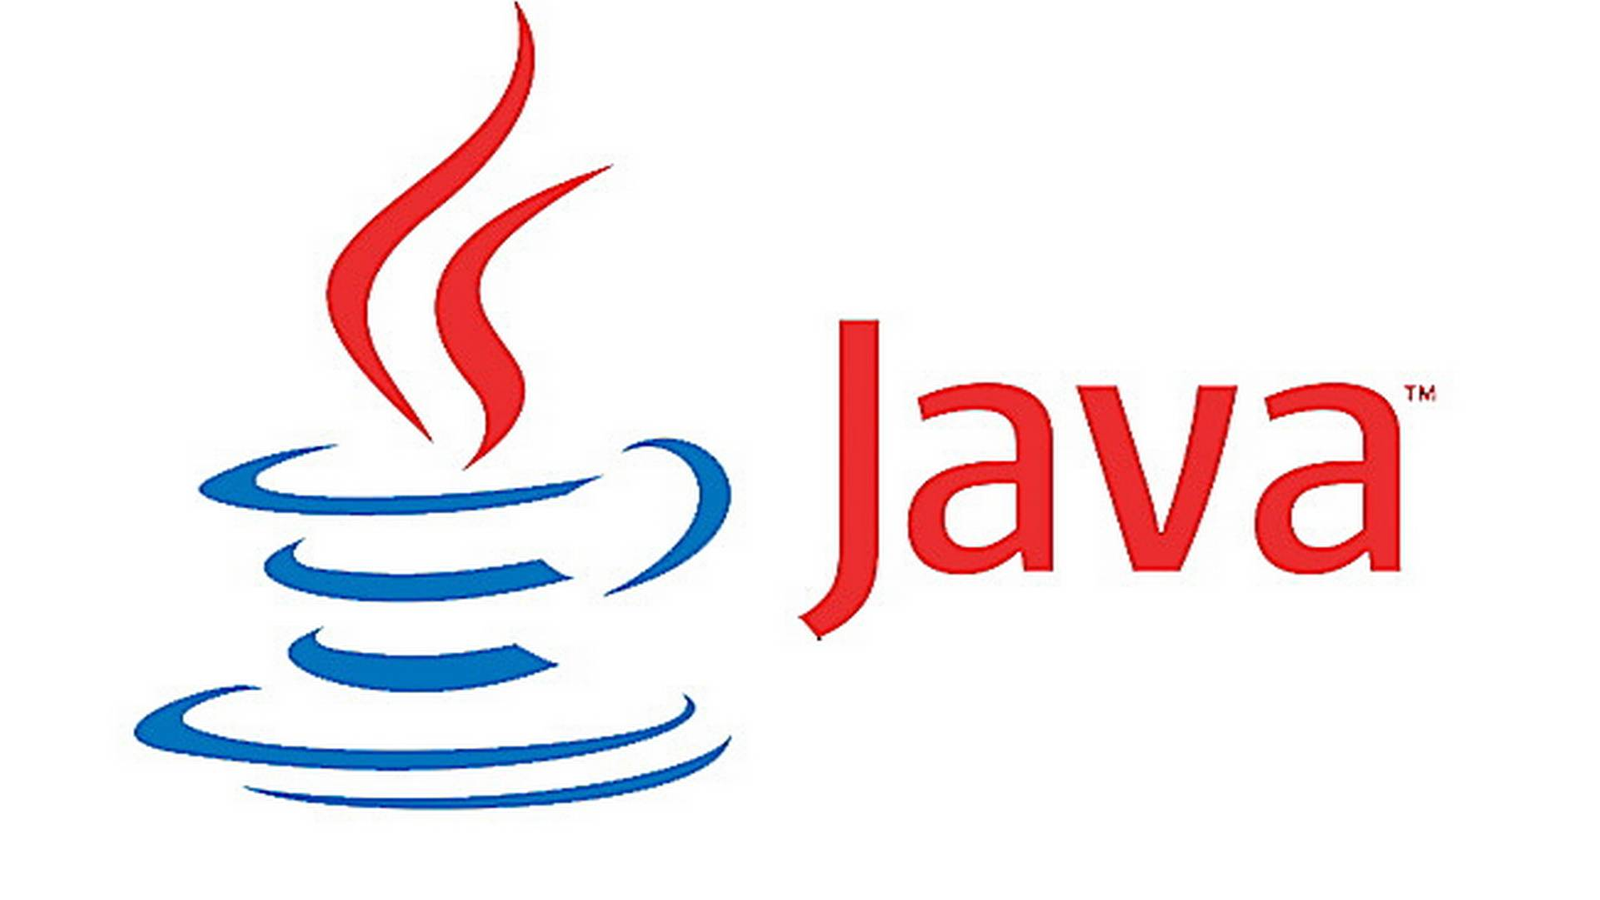 Primitive Data Types in Java